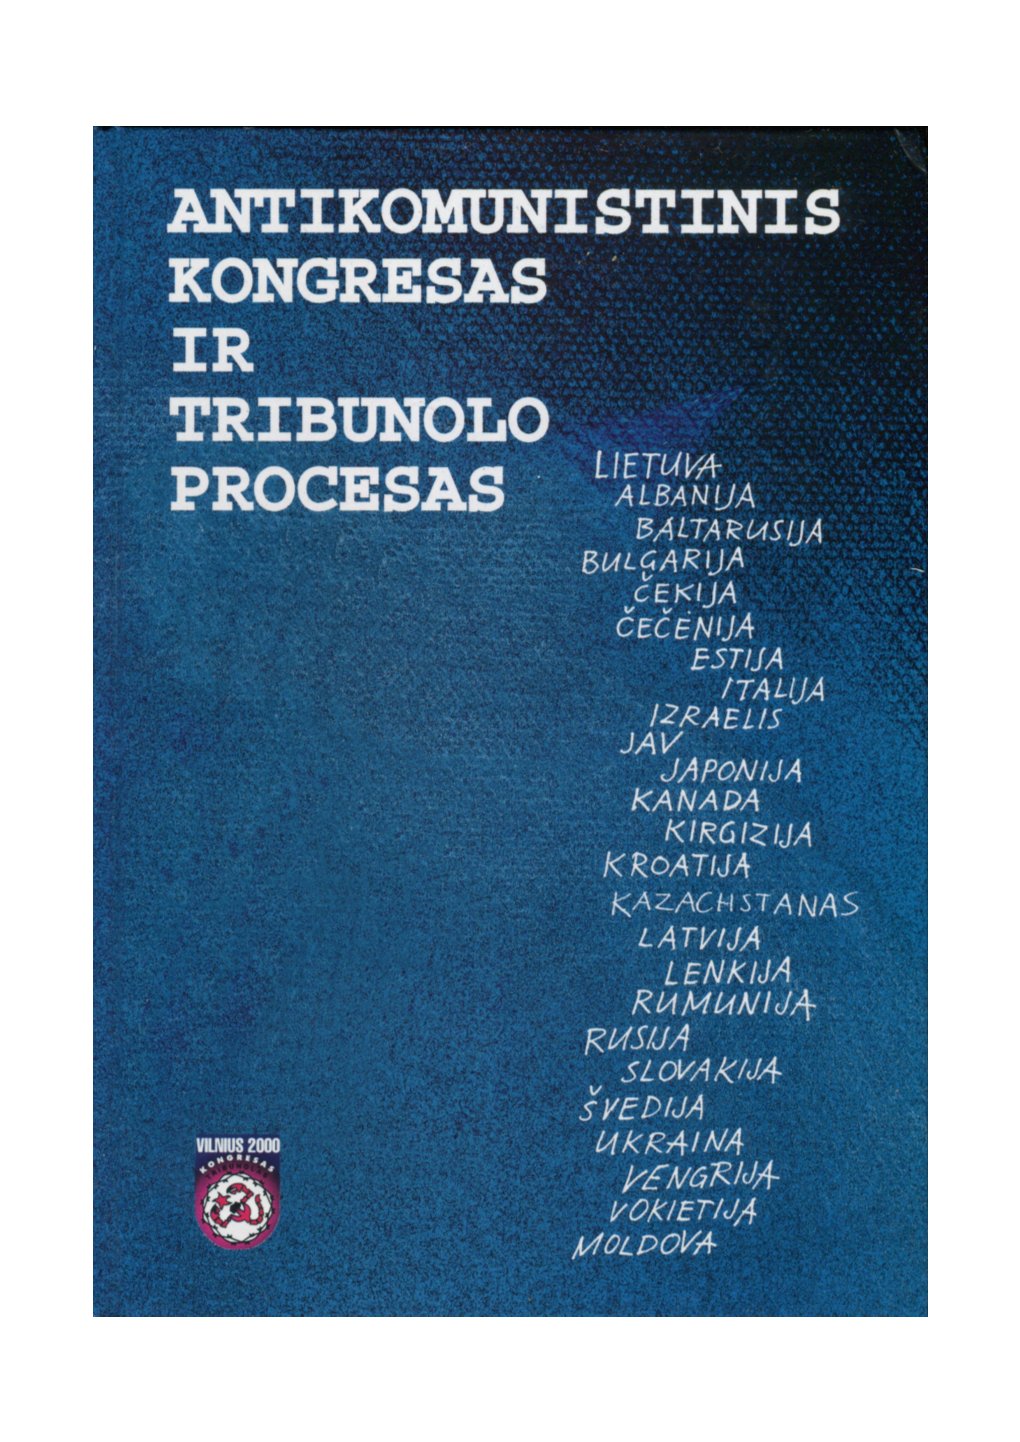 ANTIKOMUNISTINIS KONGRESAS IR TARPTAUTINIO VILNIAUS VISUOMENINIO TRIBUNOLO PROCESAS „Komunizmo Nusikaltimų Įvertinimas" 2000